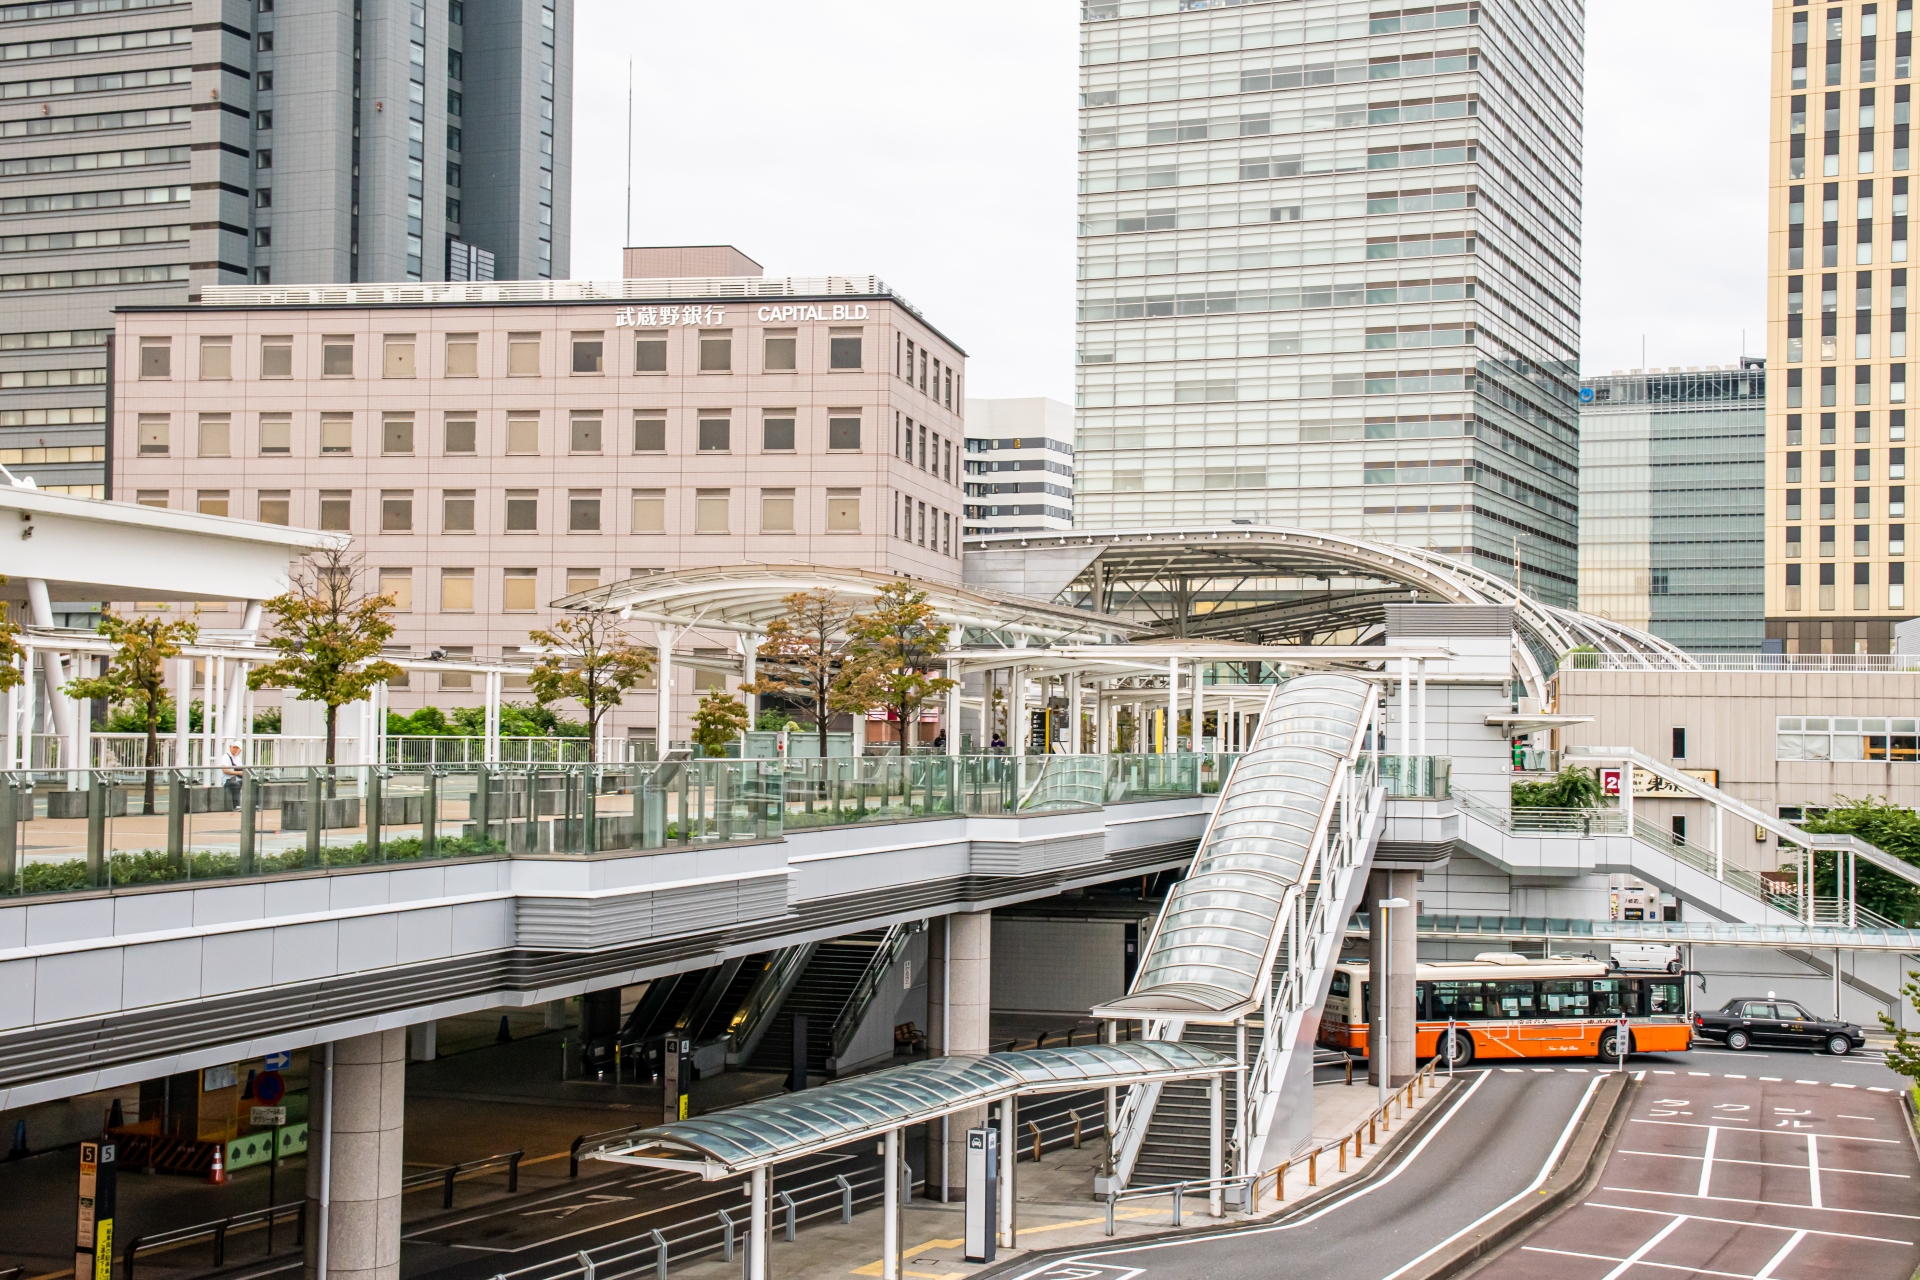 2000年に開業した、JR東日本のさいたま新都心駅。近くにはさいたまスーパーアリーナやコクーンシティなどの集客施設が広がる。